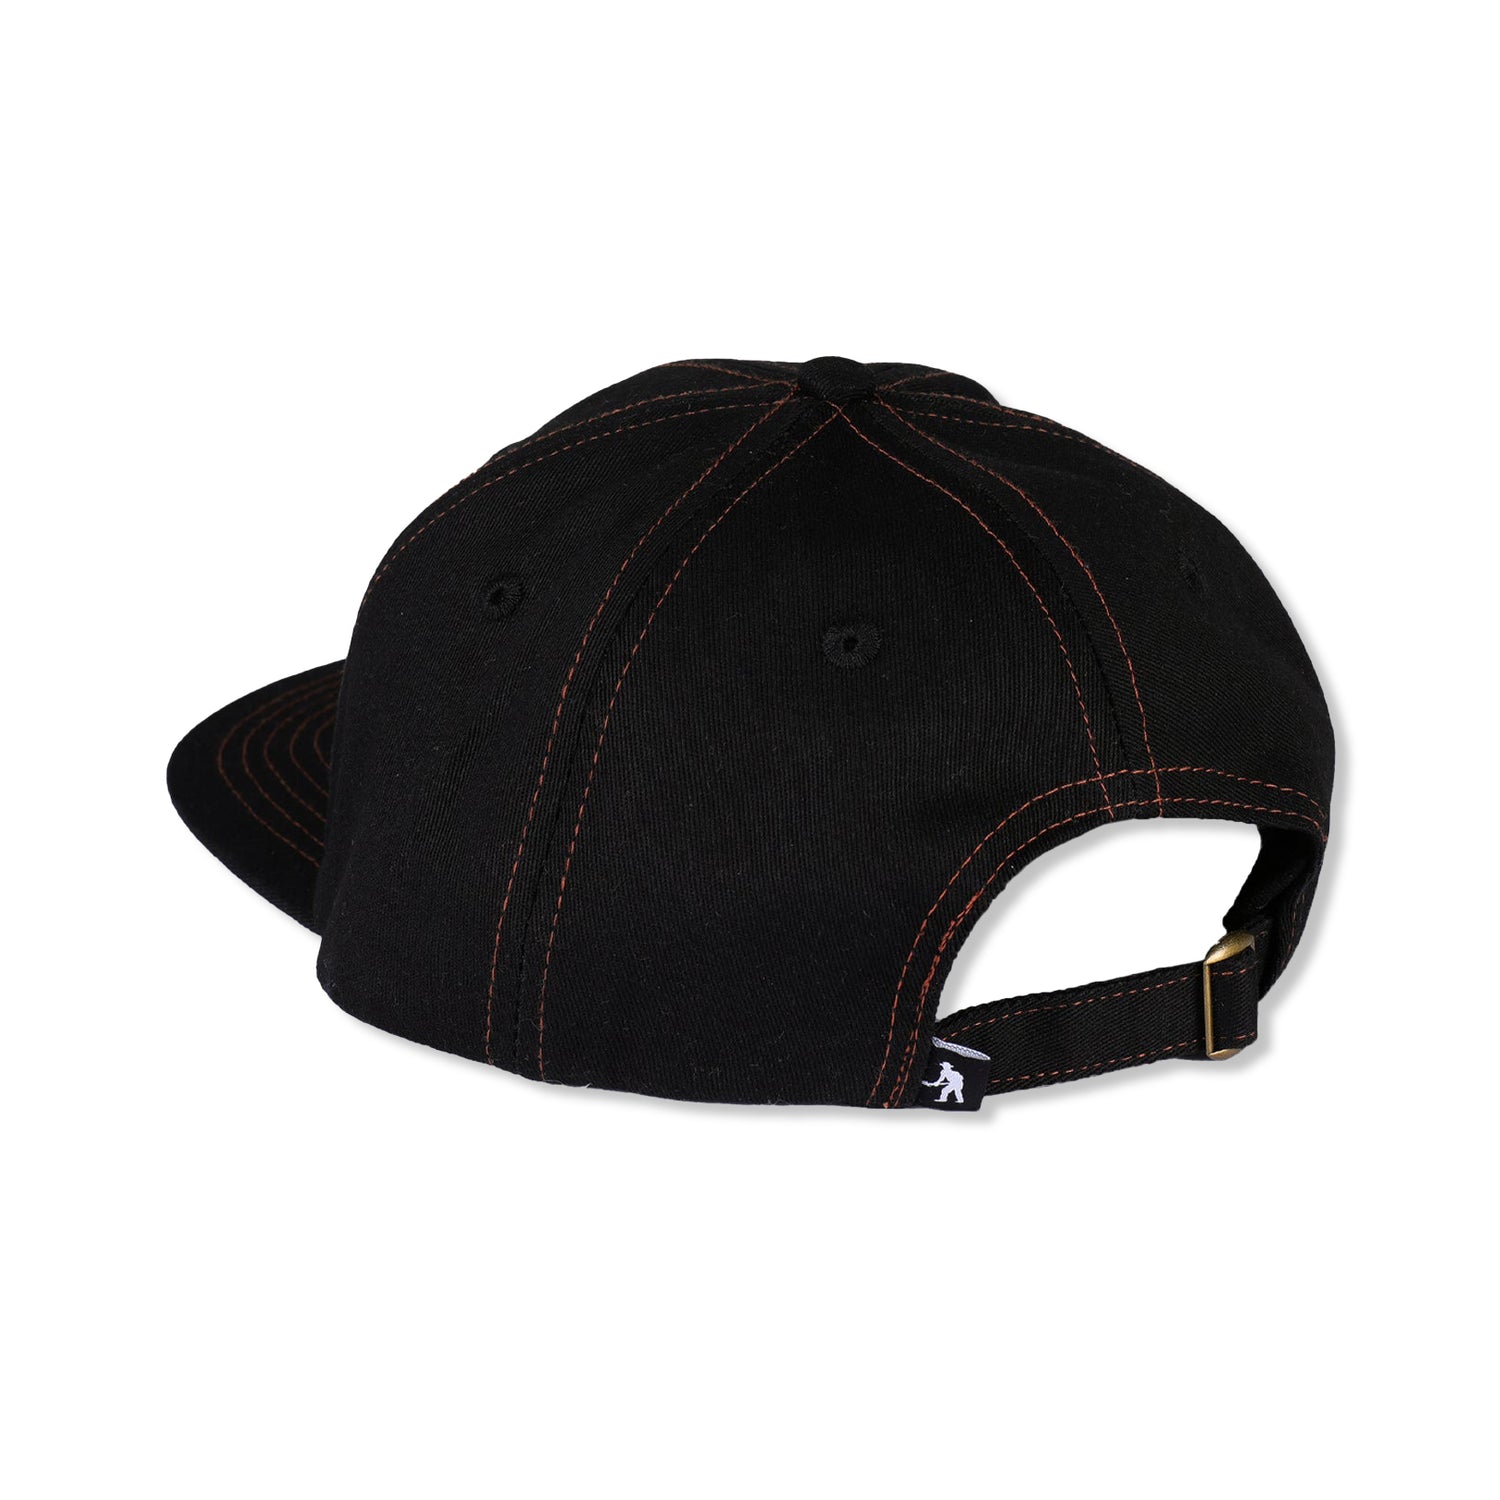 Bloom Workers Hat, Black